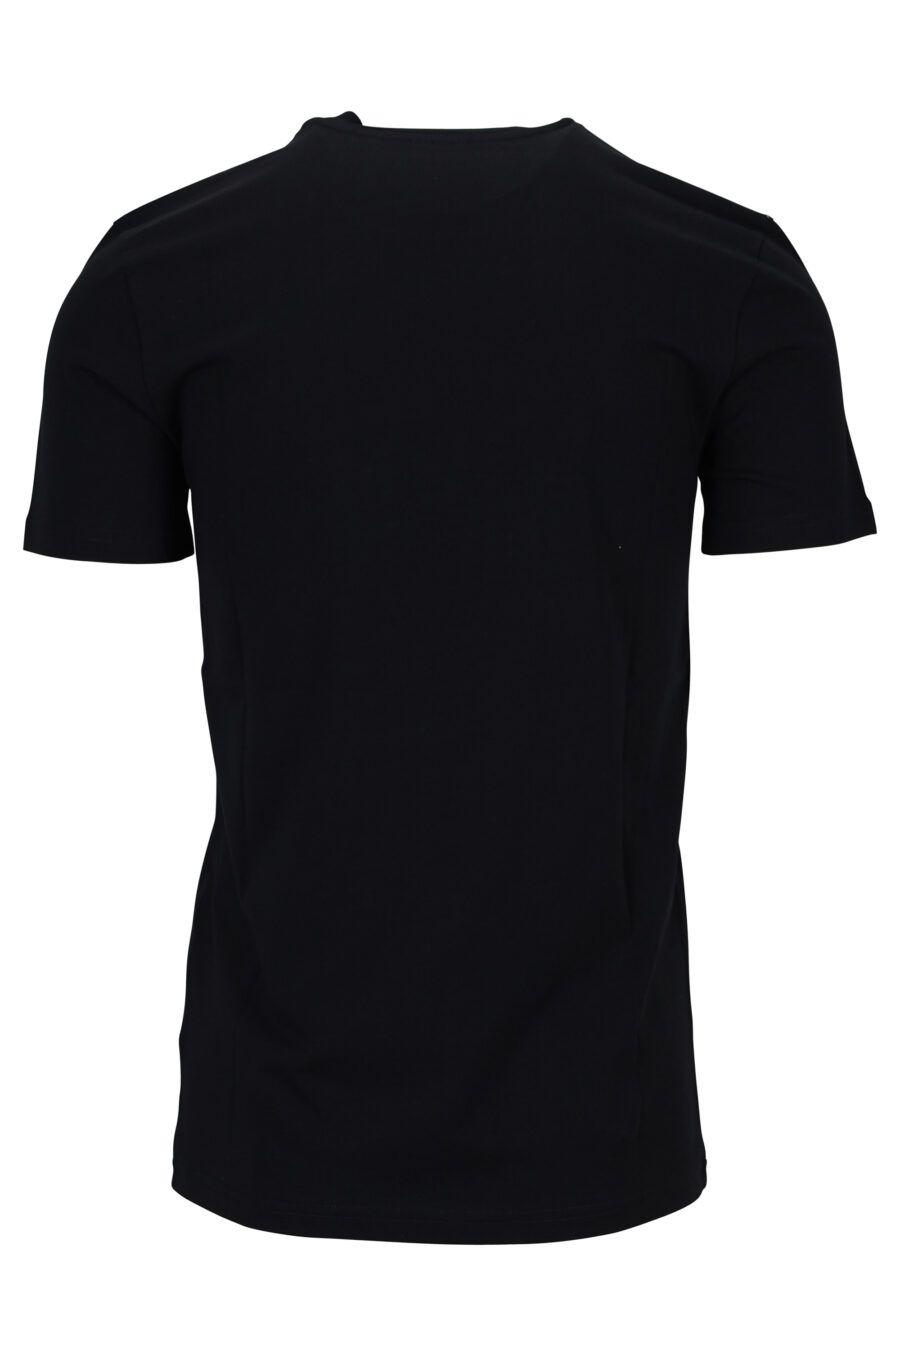 T-shirt noir en coton biologique avec maxilogue blanc - 889316648973 1